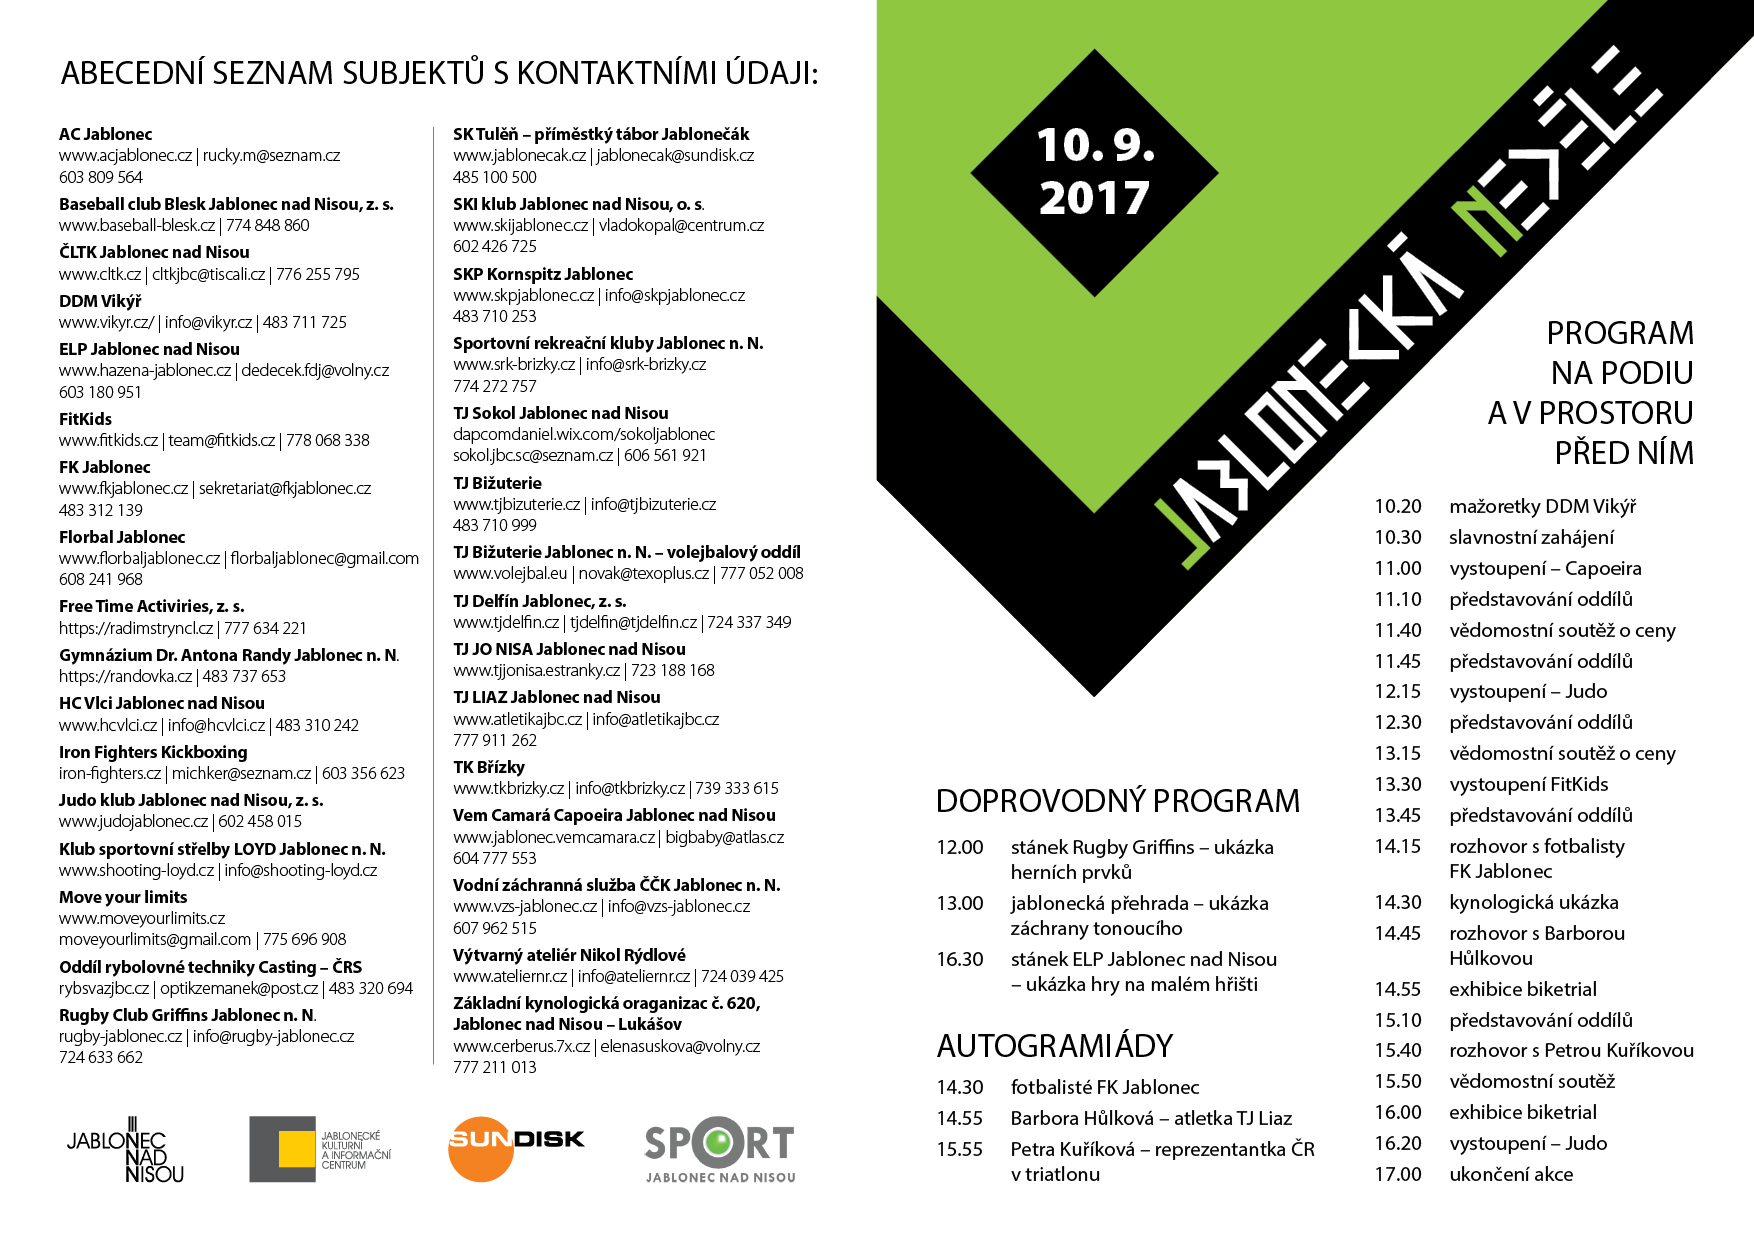 Program akce Jablonecká neděle 2017